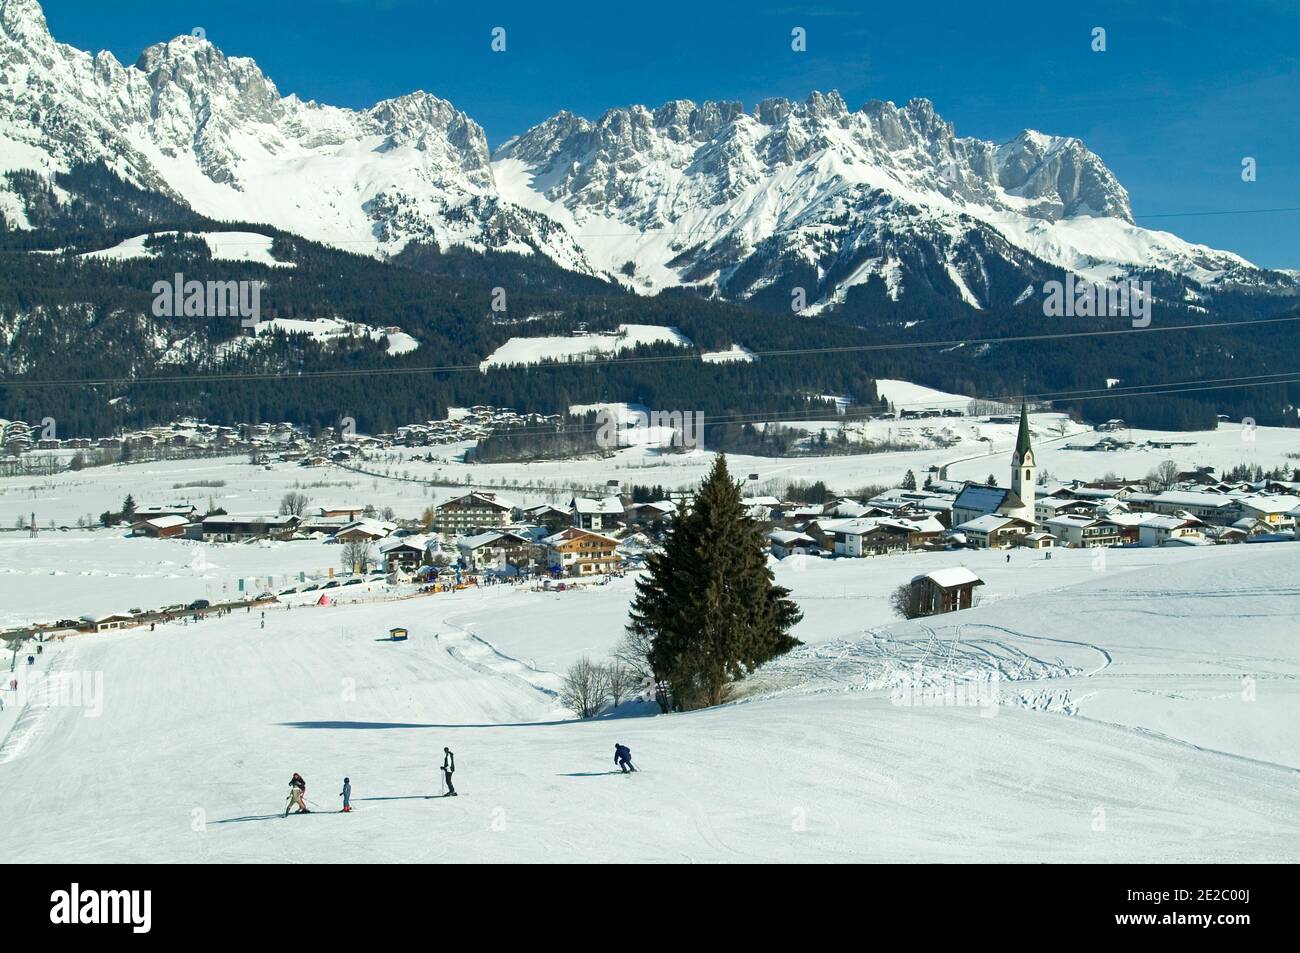 View down toward Ellmau, Tyrol, Austria Stock Photo